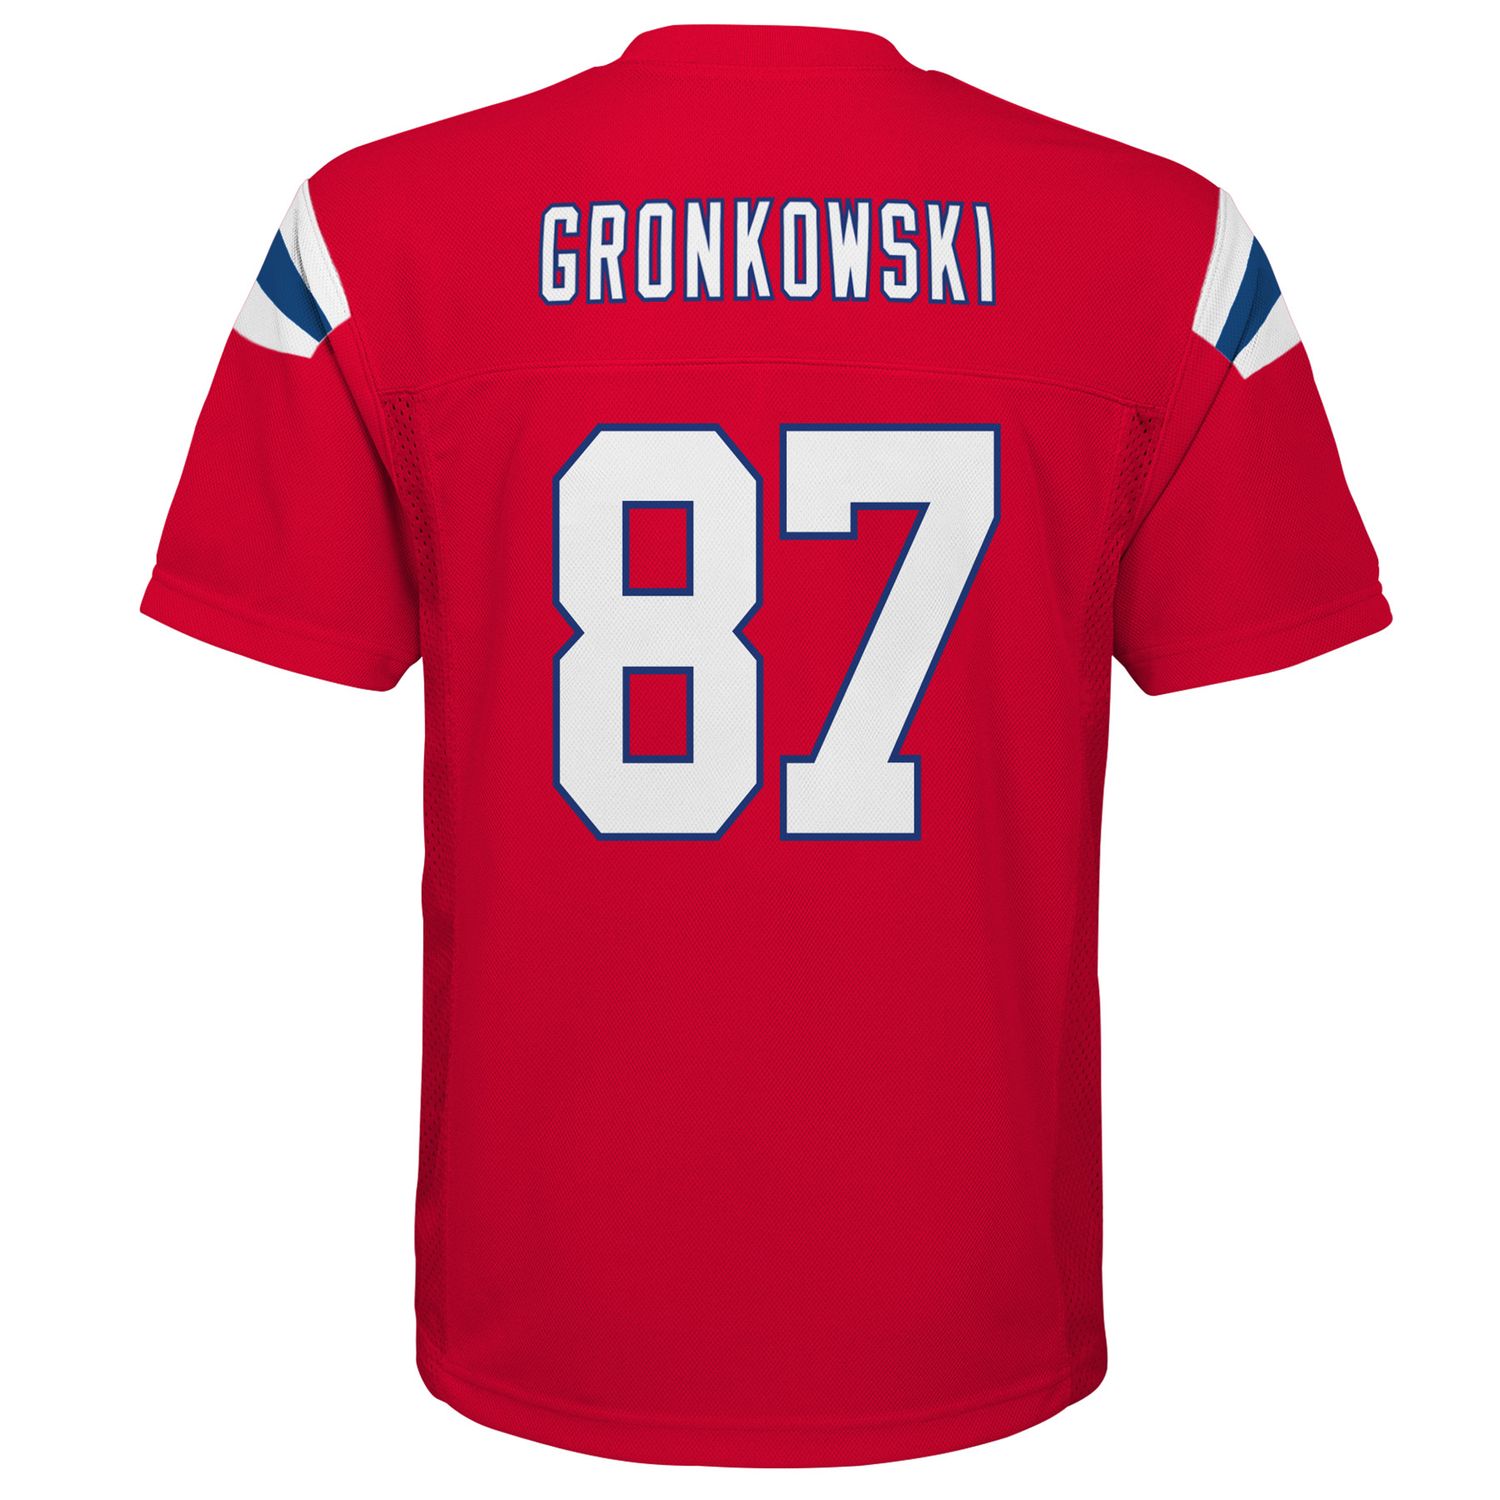 gronkowski patriots jersey